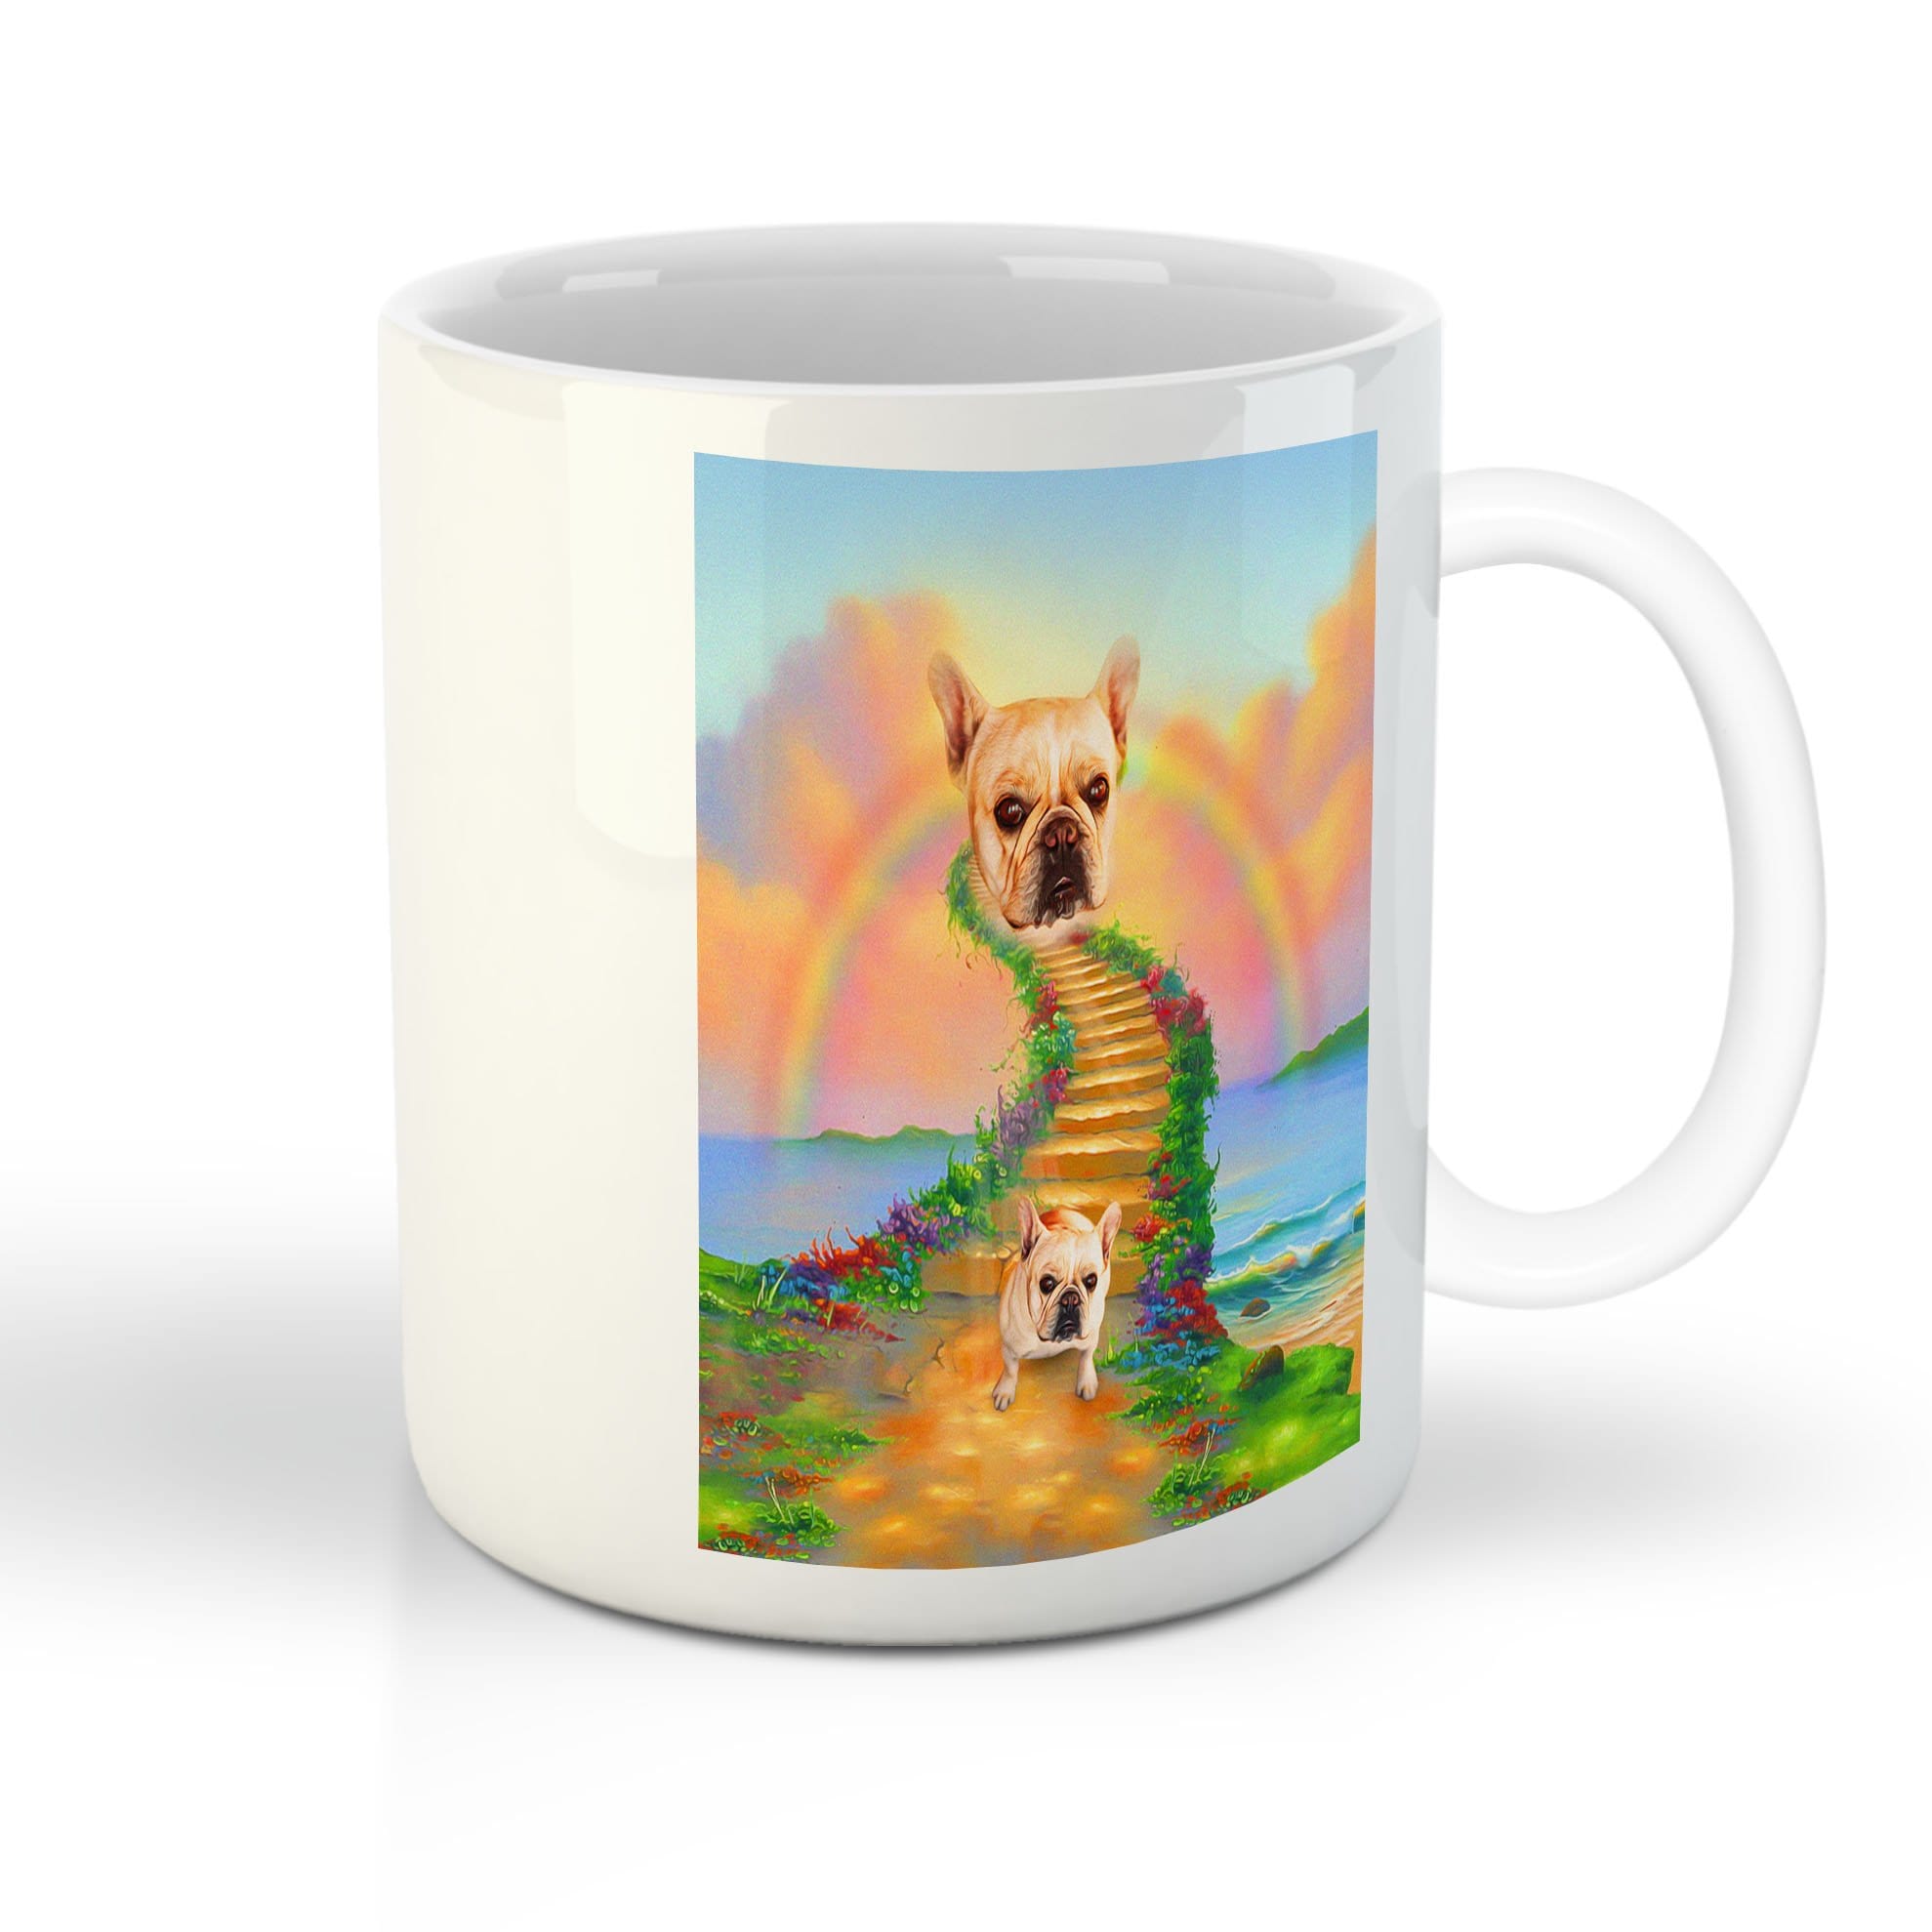 &#39;The Rainbow Bridge&#39; Personalized Pet Mug